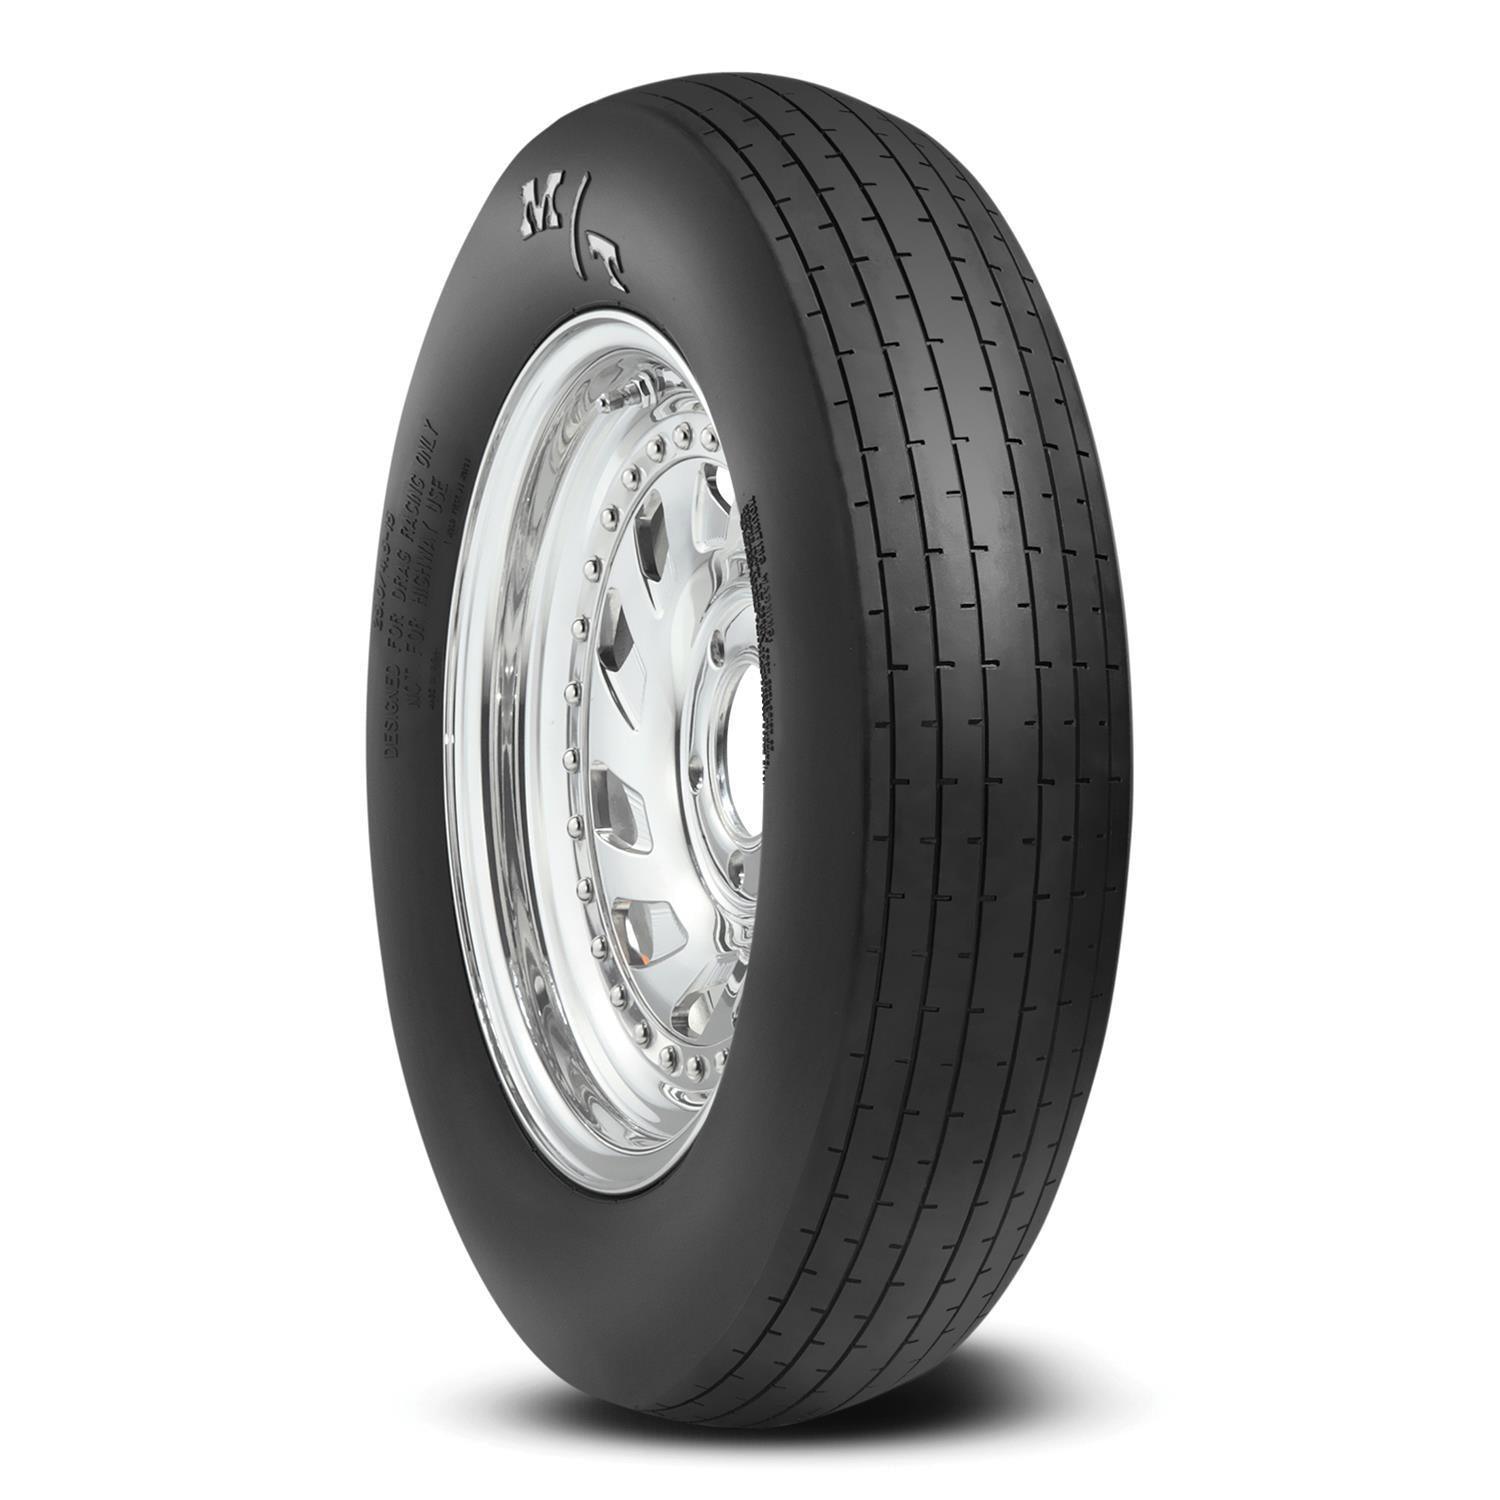 27.5x4.0-15 ET Drag Front Tire - Burlile Performance Products